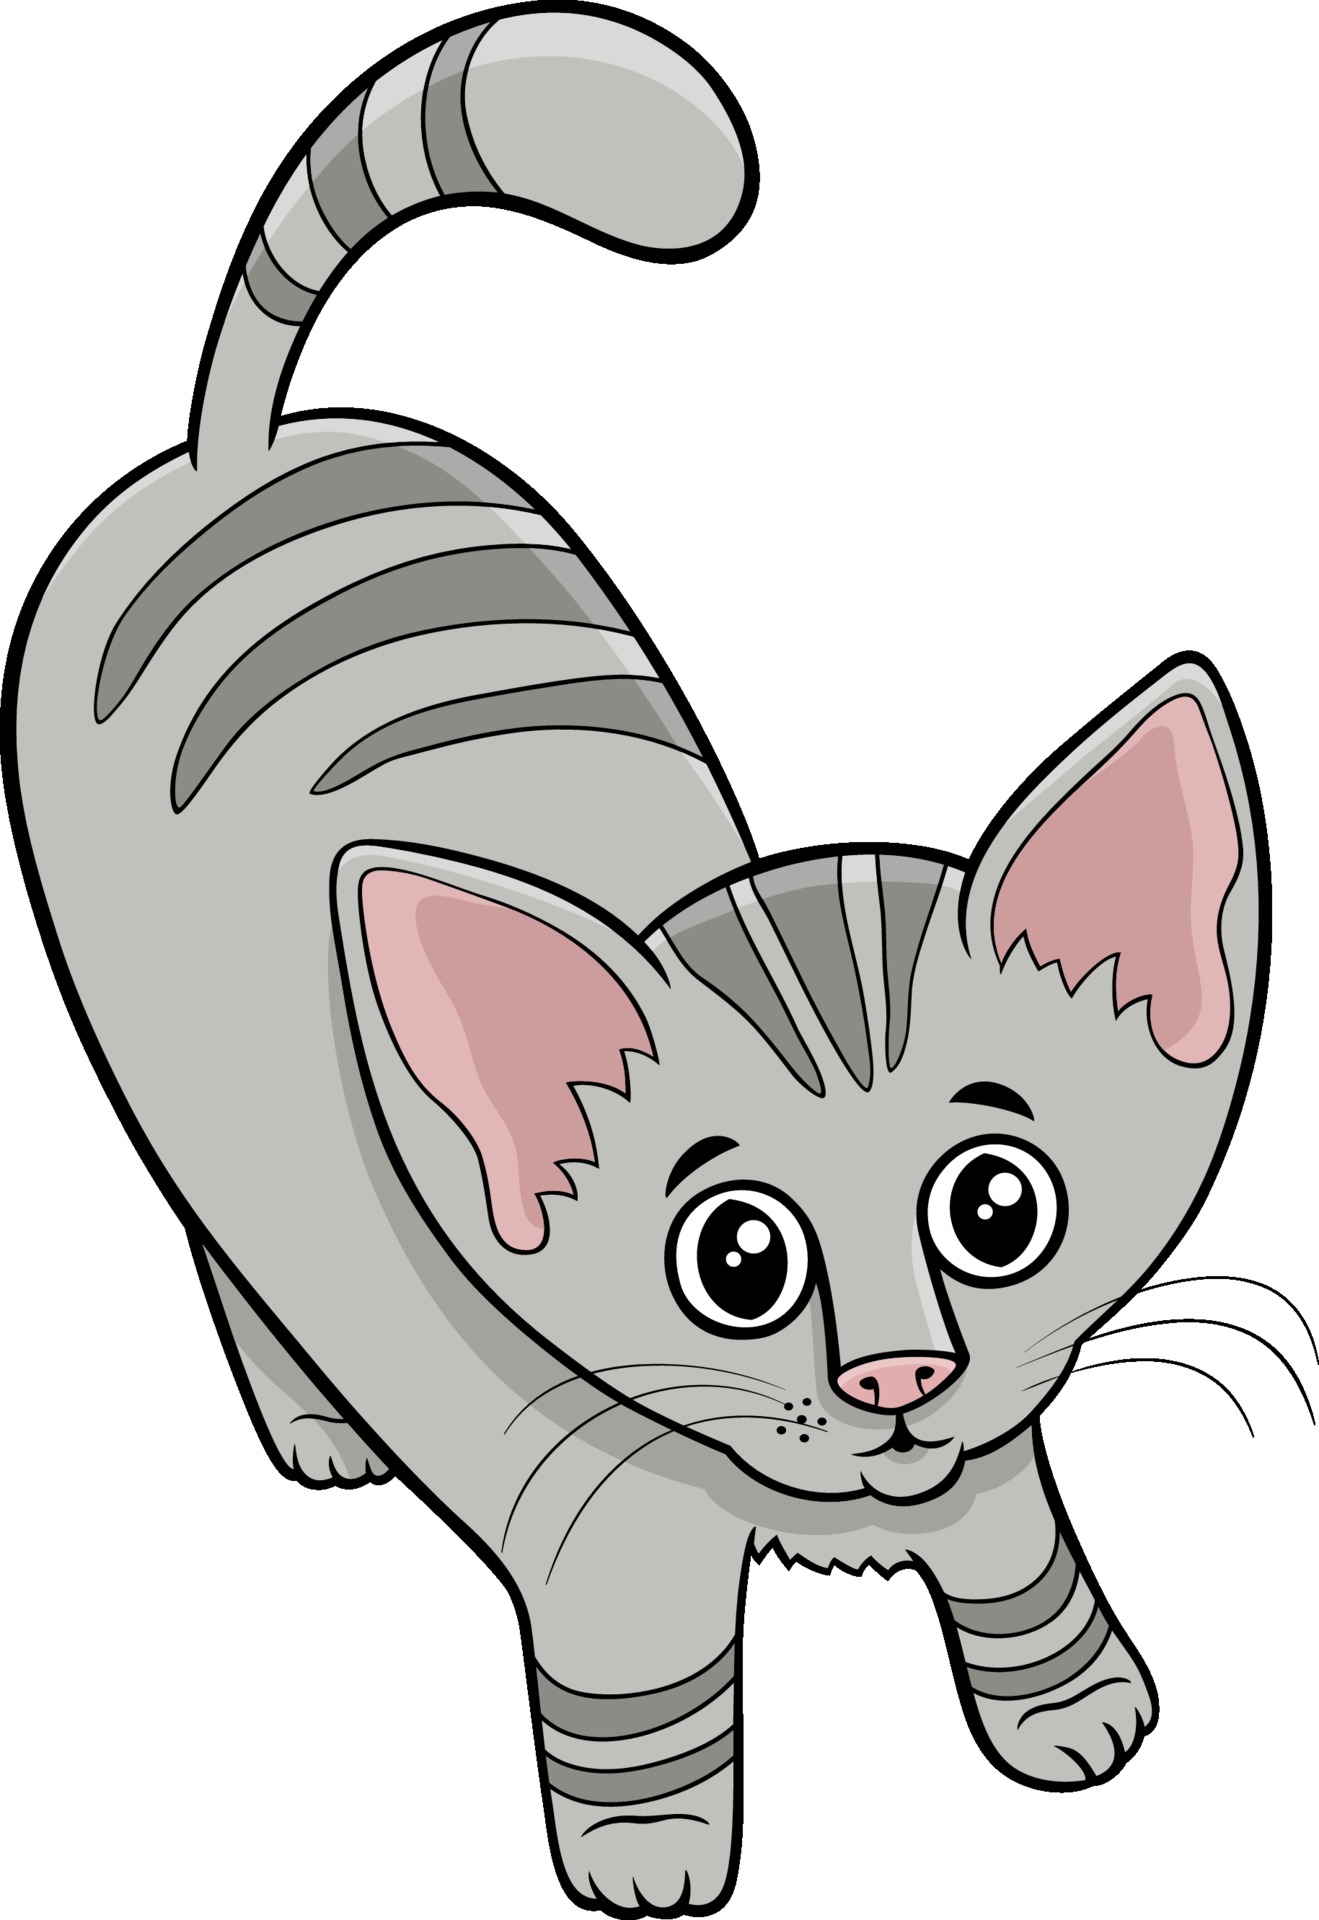 Mignon Chat Tigre Ou Personnage Animal De Dessin Anime Chaton Telecharger Vectoriel Gratuit Clipart Graphique Vecteur Dessins Et Pictogramme Gratuit